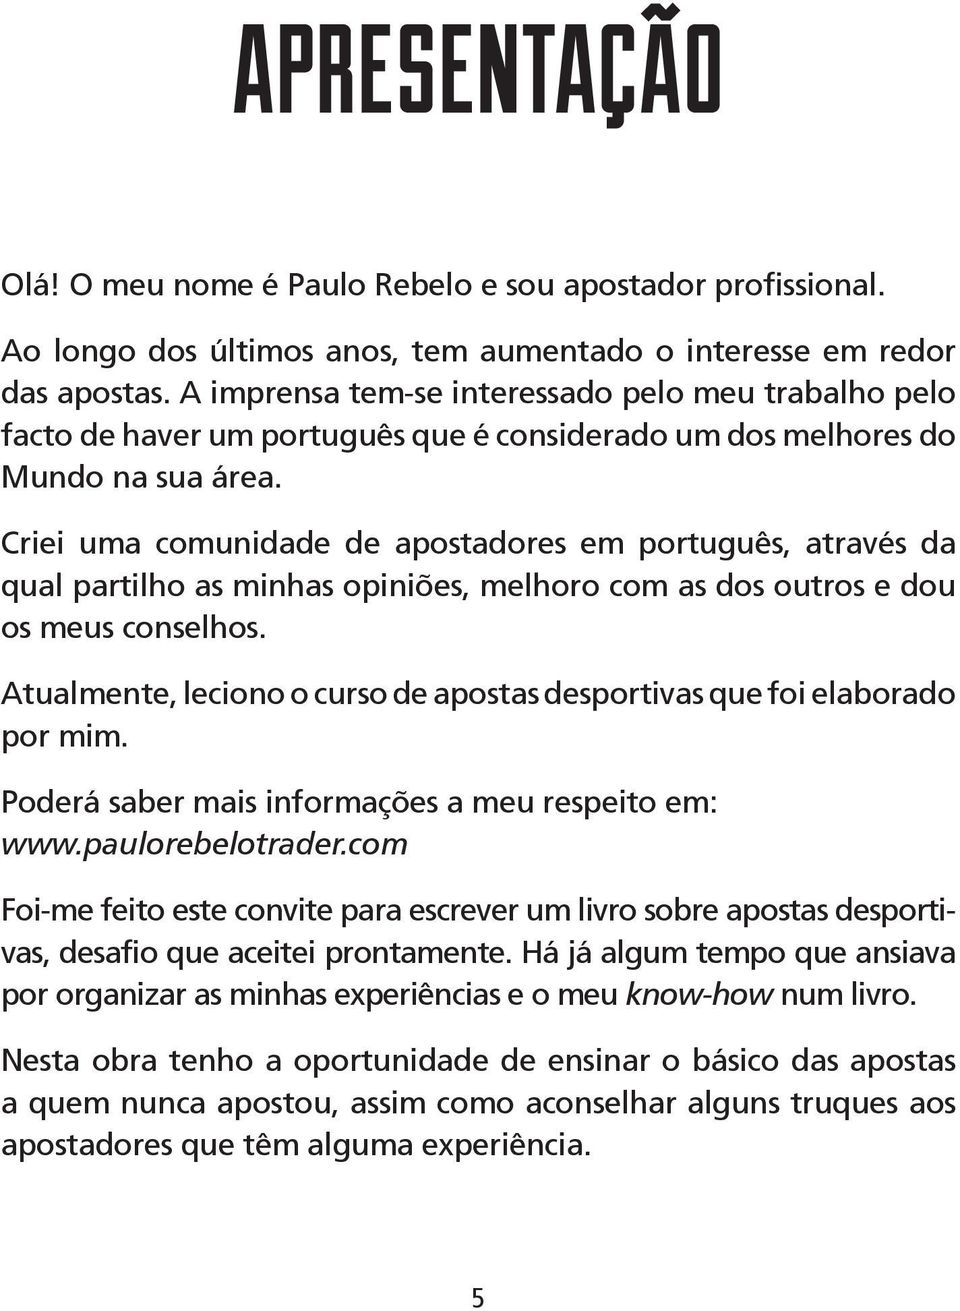 Criei uma comunidade de apostadores em português, através da qual partilho as minhas opiniões, melhoro com as dos outros e dou os meus conselhos.